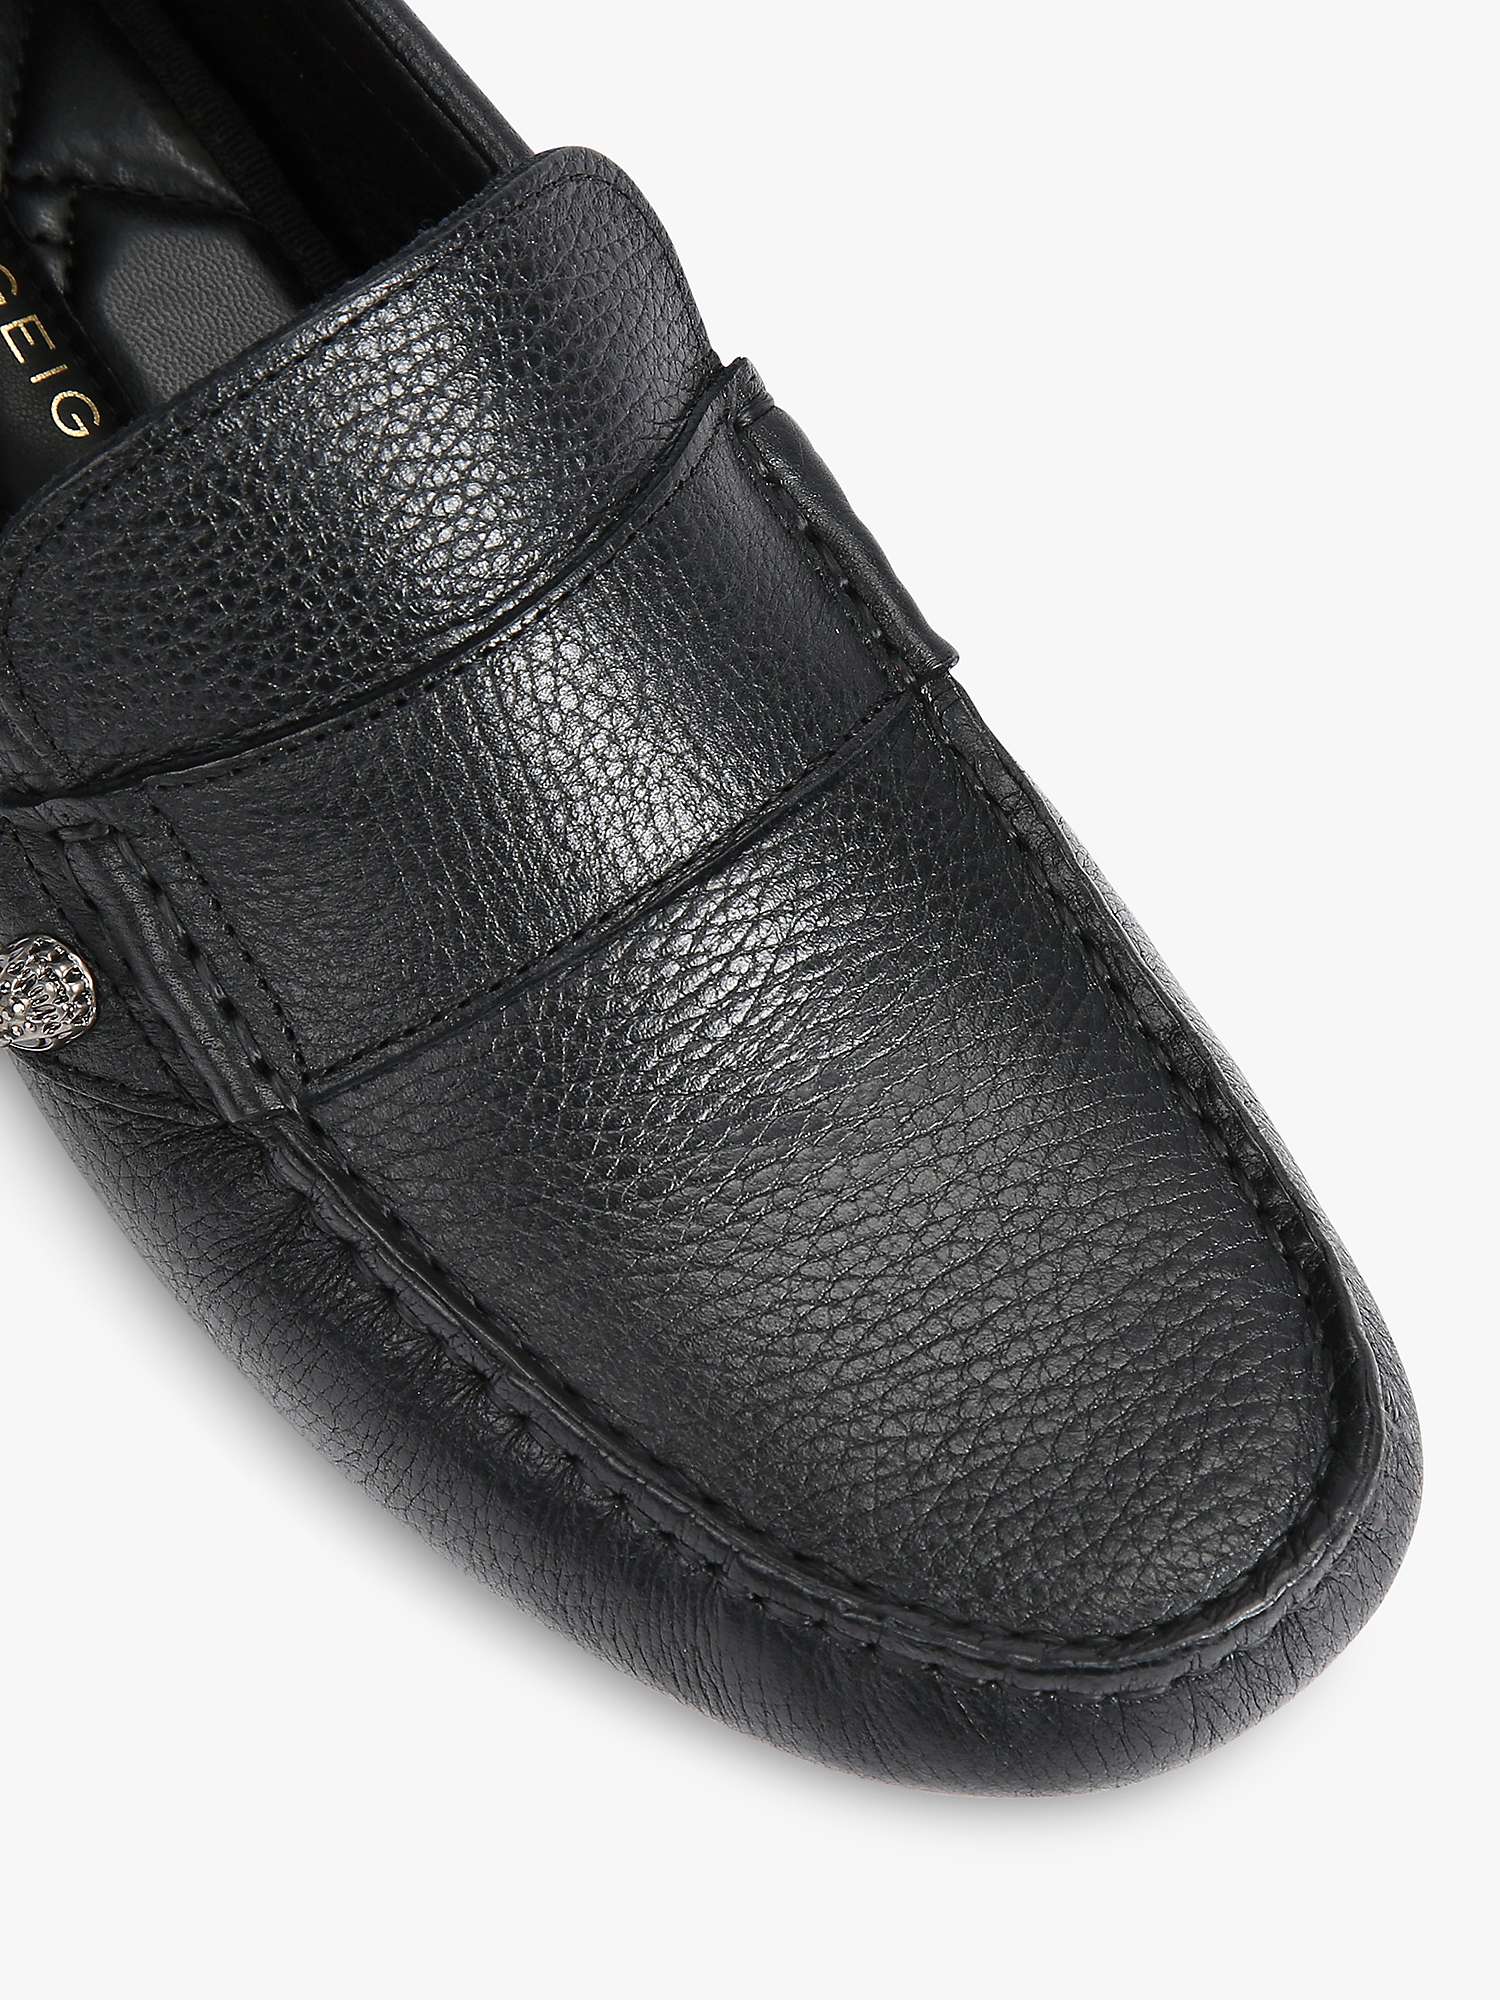 Buy Kurt Geiger London Stirling Leather Loafers, Black Online at johnlewis.com